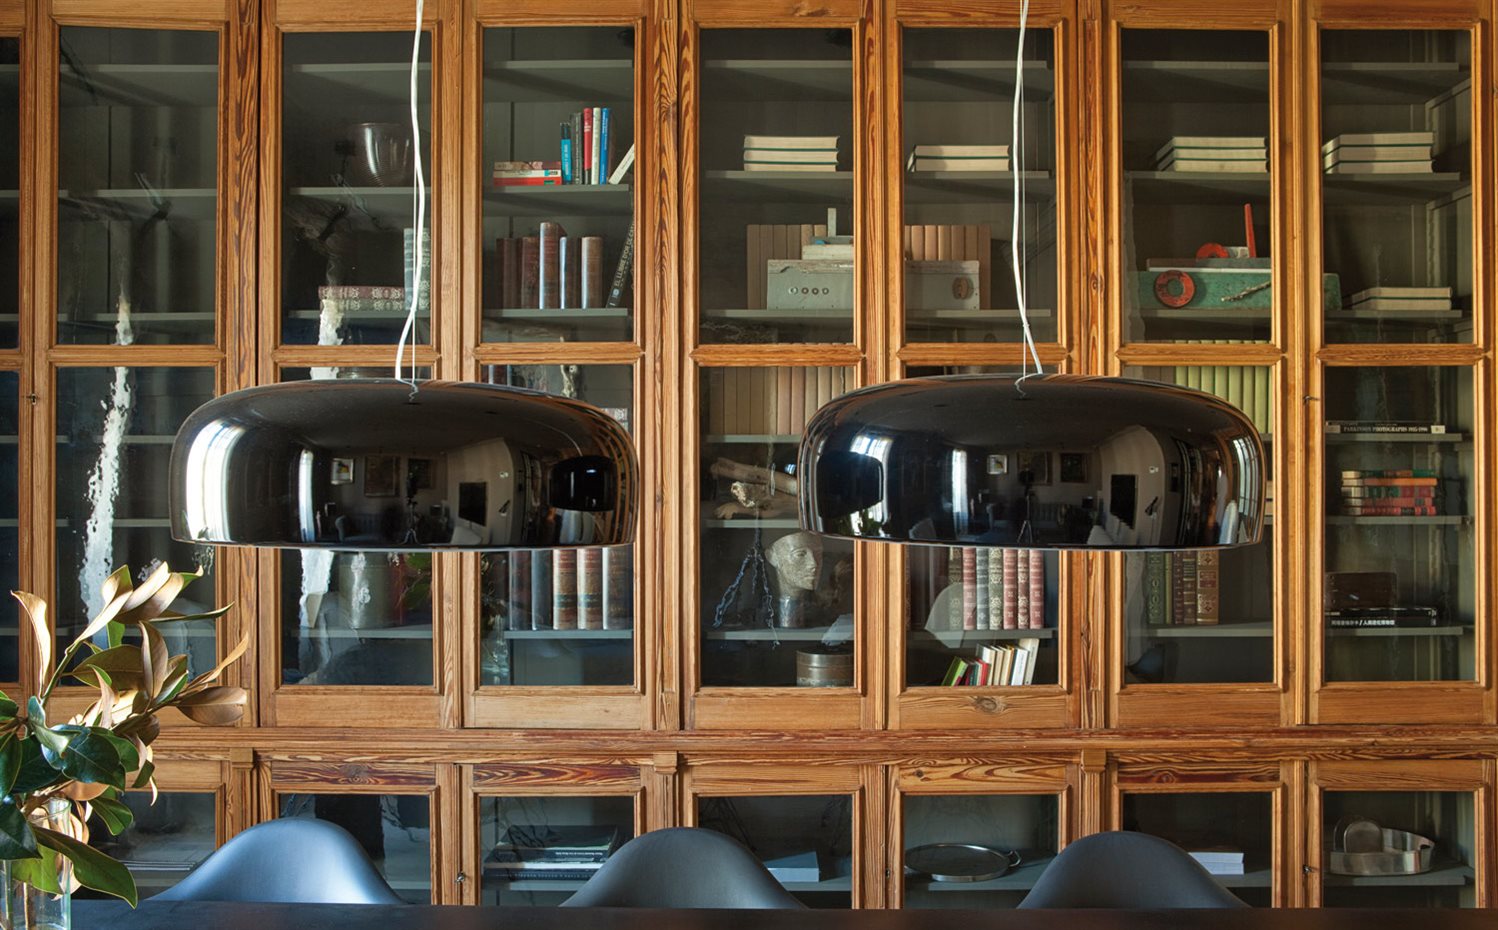 00368861 O. La librería de madera con vitrinas se adquirió en un anticuario de Girona y se adaptó al nuevo espacio. Lámparas colgantes Smithfield S, diseño de Jasper Morrison para Flos